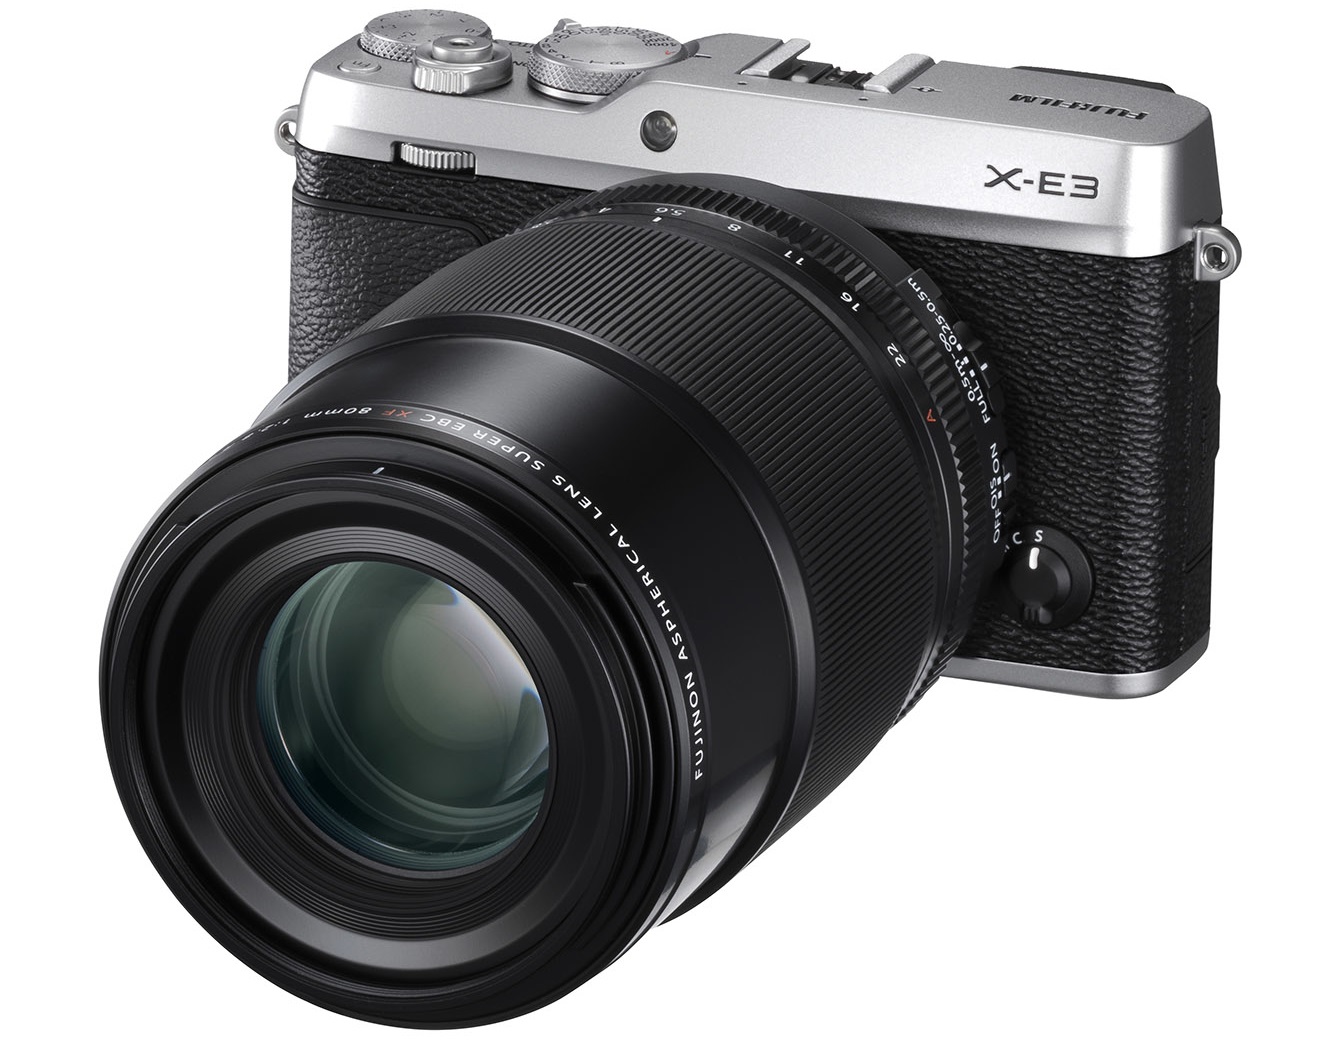 Η νέα Fujifilm X-E3 υποστηρίζει 4K video